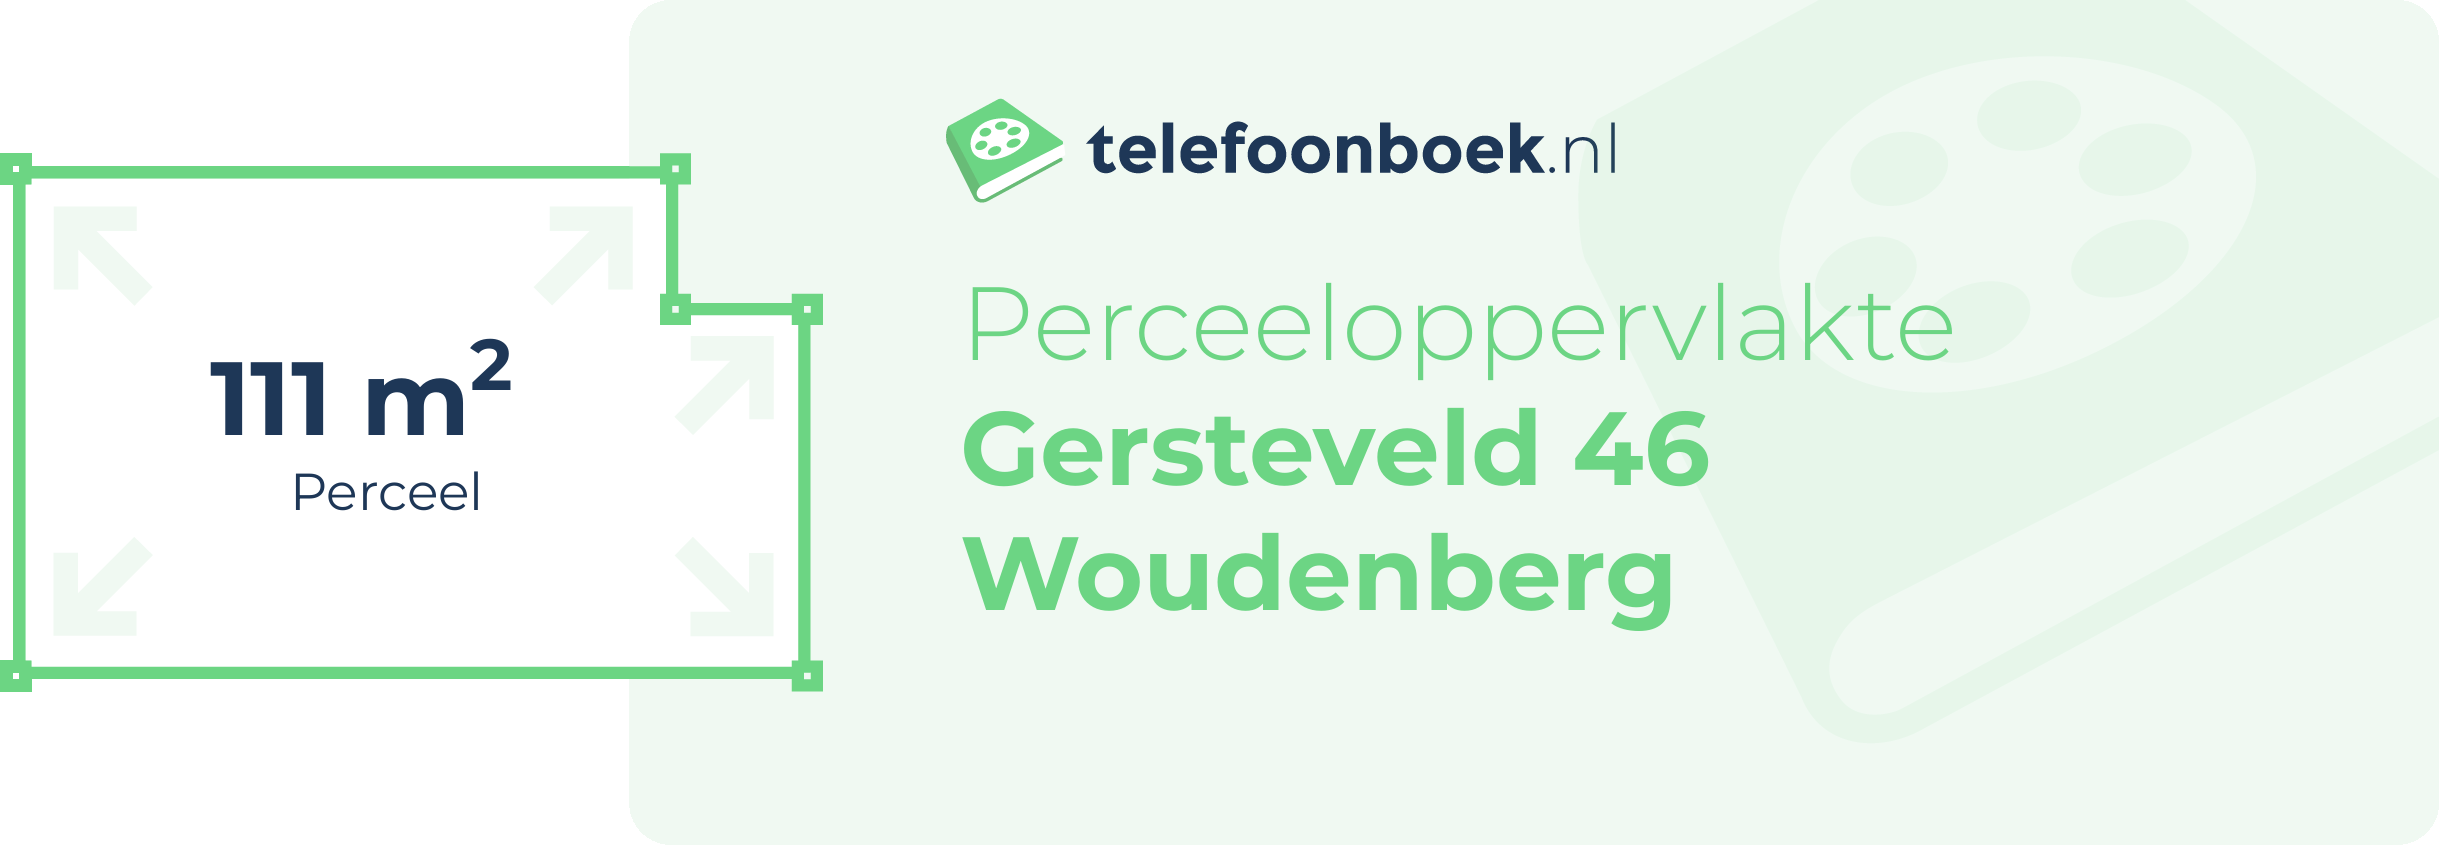 Perceeloppervlakte Gersteveld 46 Woudenberg